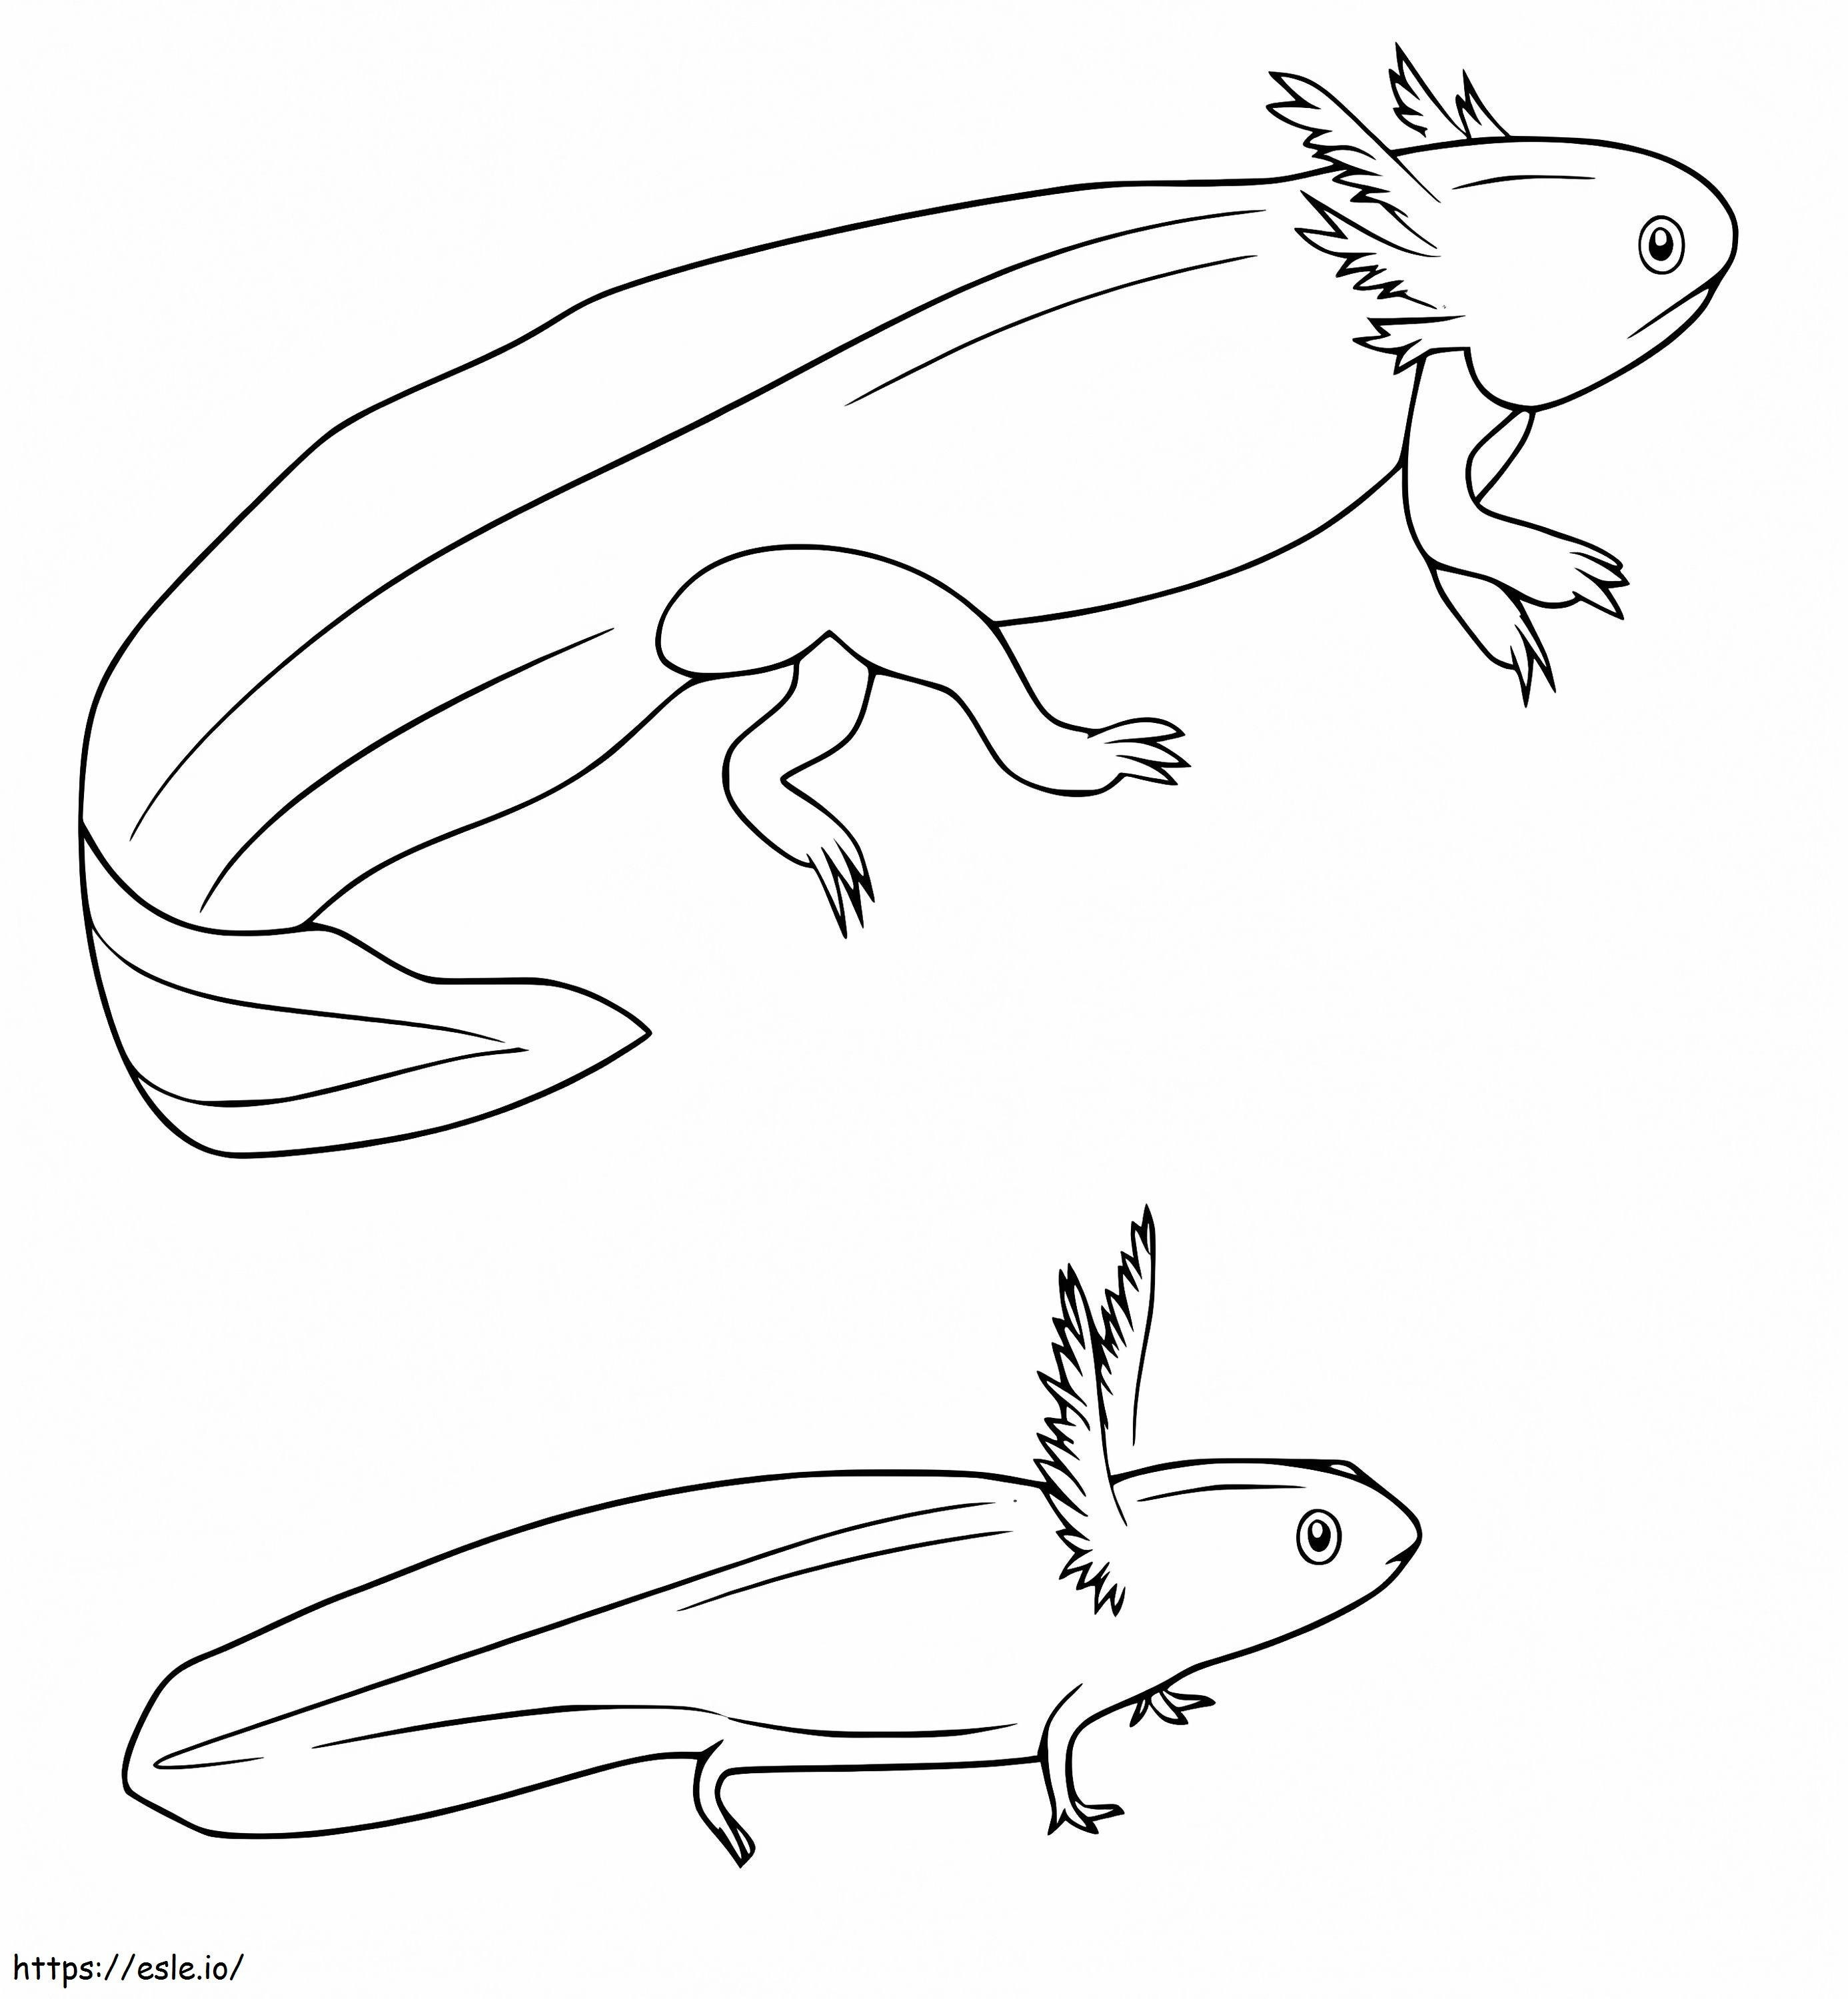 Big And Small Axolotl coloring page